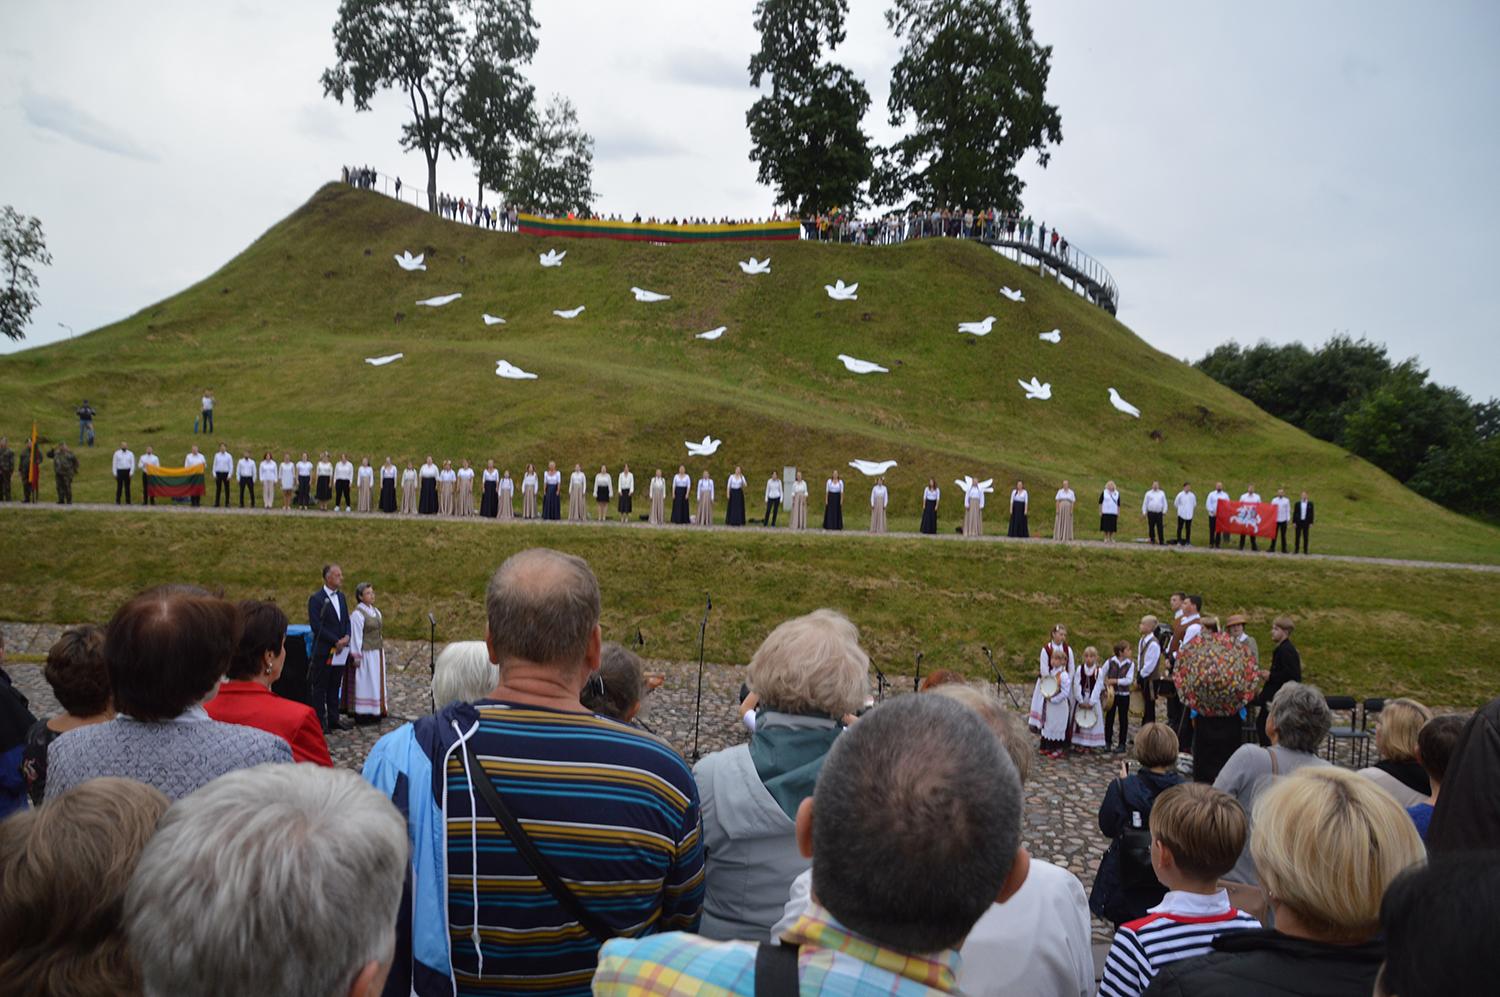 Valstybės dieną piliakalnį papuošė balandžiai / Ukmergiškiai susirinko giedoti himno ant piliakalnio.  Autoriaus nuotr.